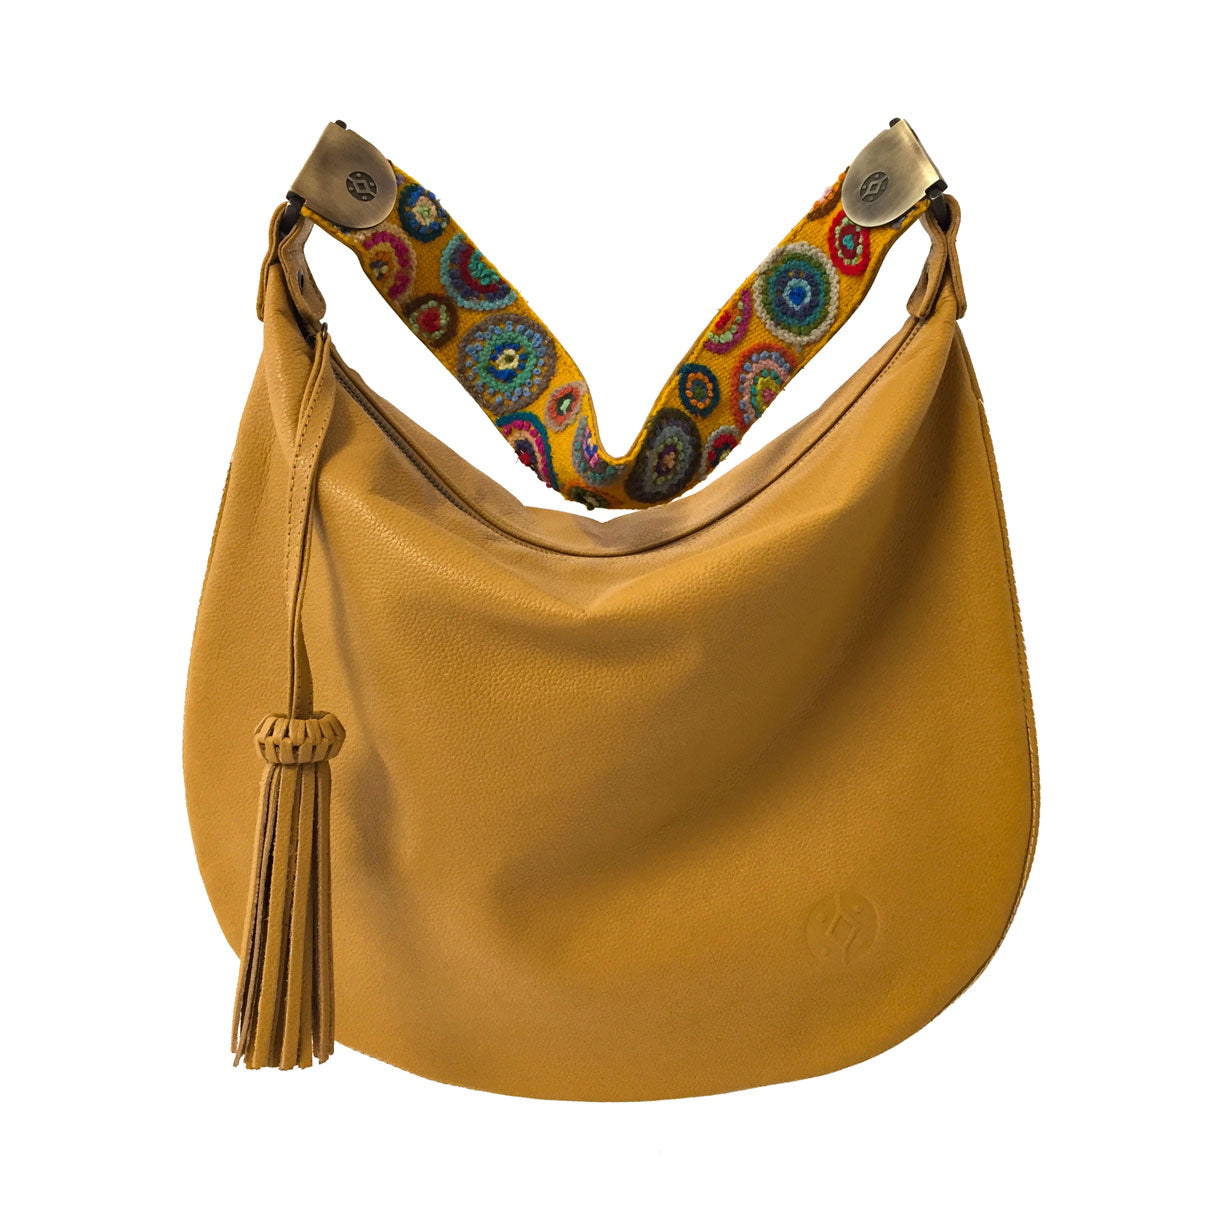 Bolsa de piel al hombro para mujer con cierre con asa de artesanía peruana color amarillo